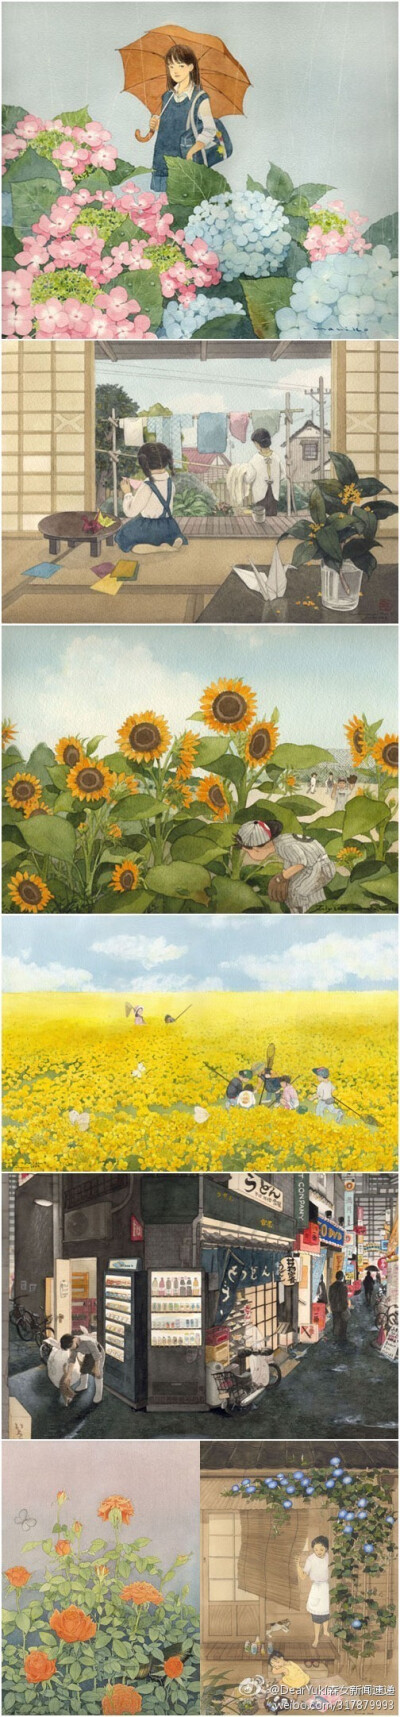 秋的心情，日本插画师，Kanazawa Mariko 1954年出生于长崎市，45岁时决定开始画画，数次投稿后被发掘，获得数个新人大奖，并成功跻身商业插画家之列。金泽的作品笔触细腻、用色温润，题材常见花卉、动物等传统日本画…